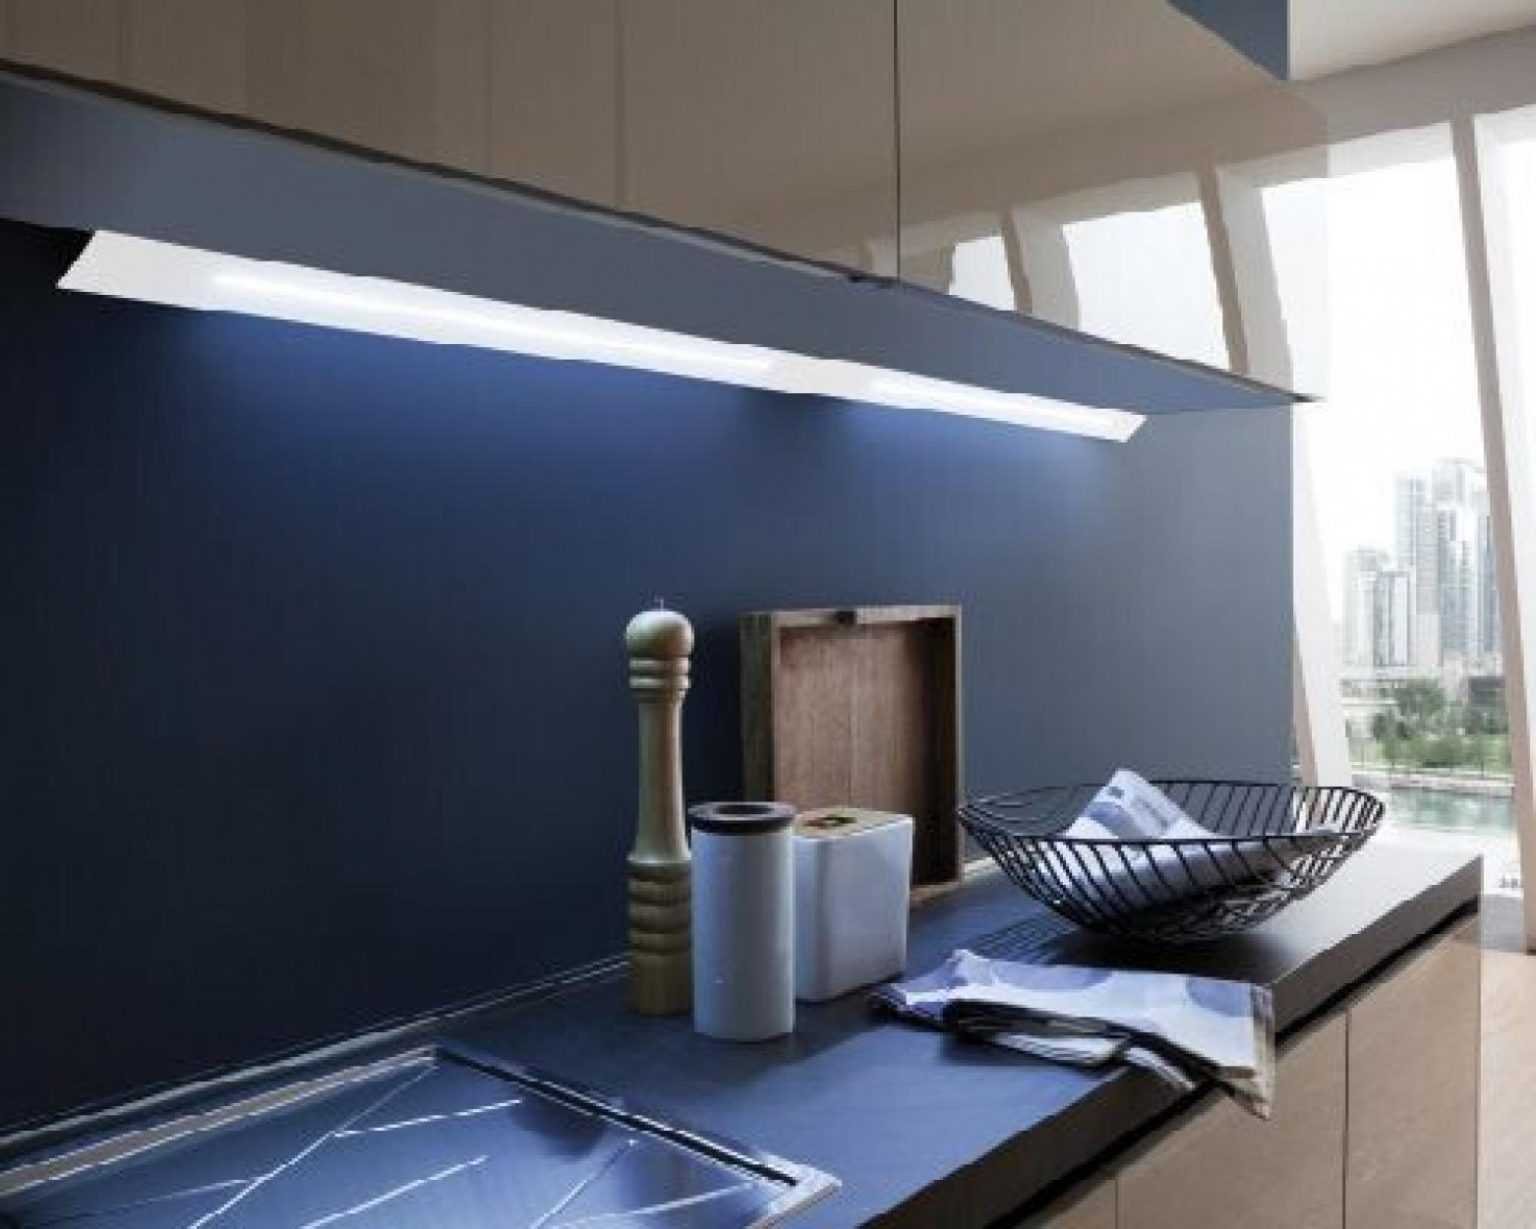 светильник для кухни под шкафы на батарейках